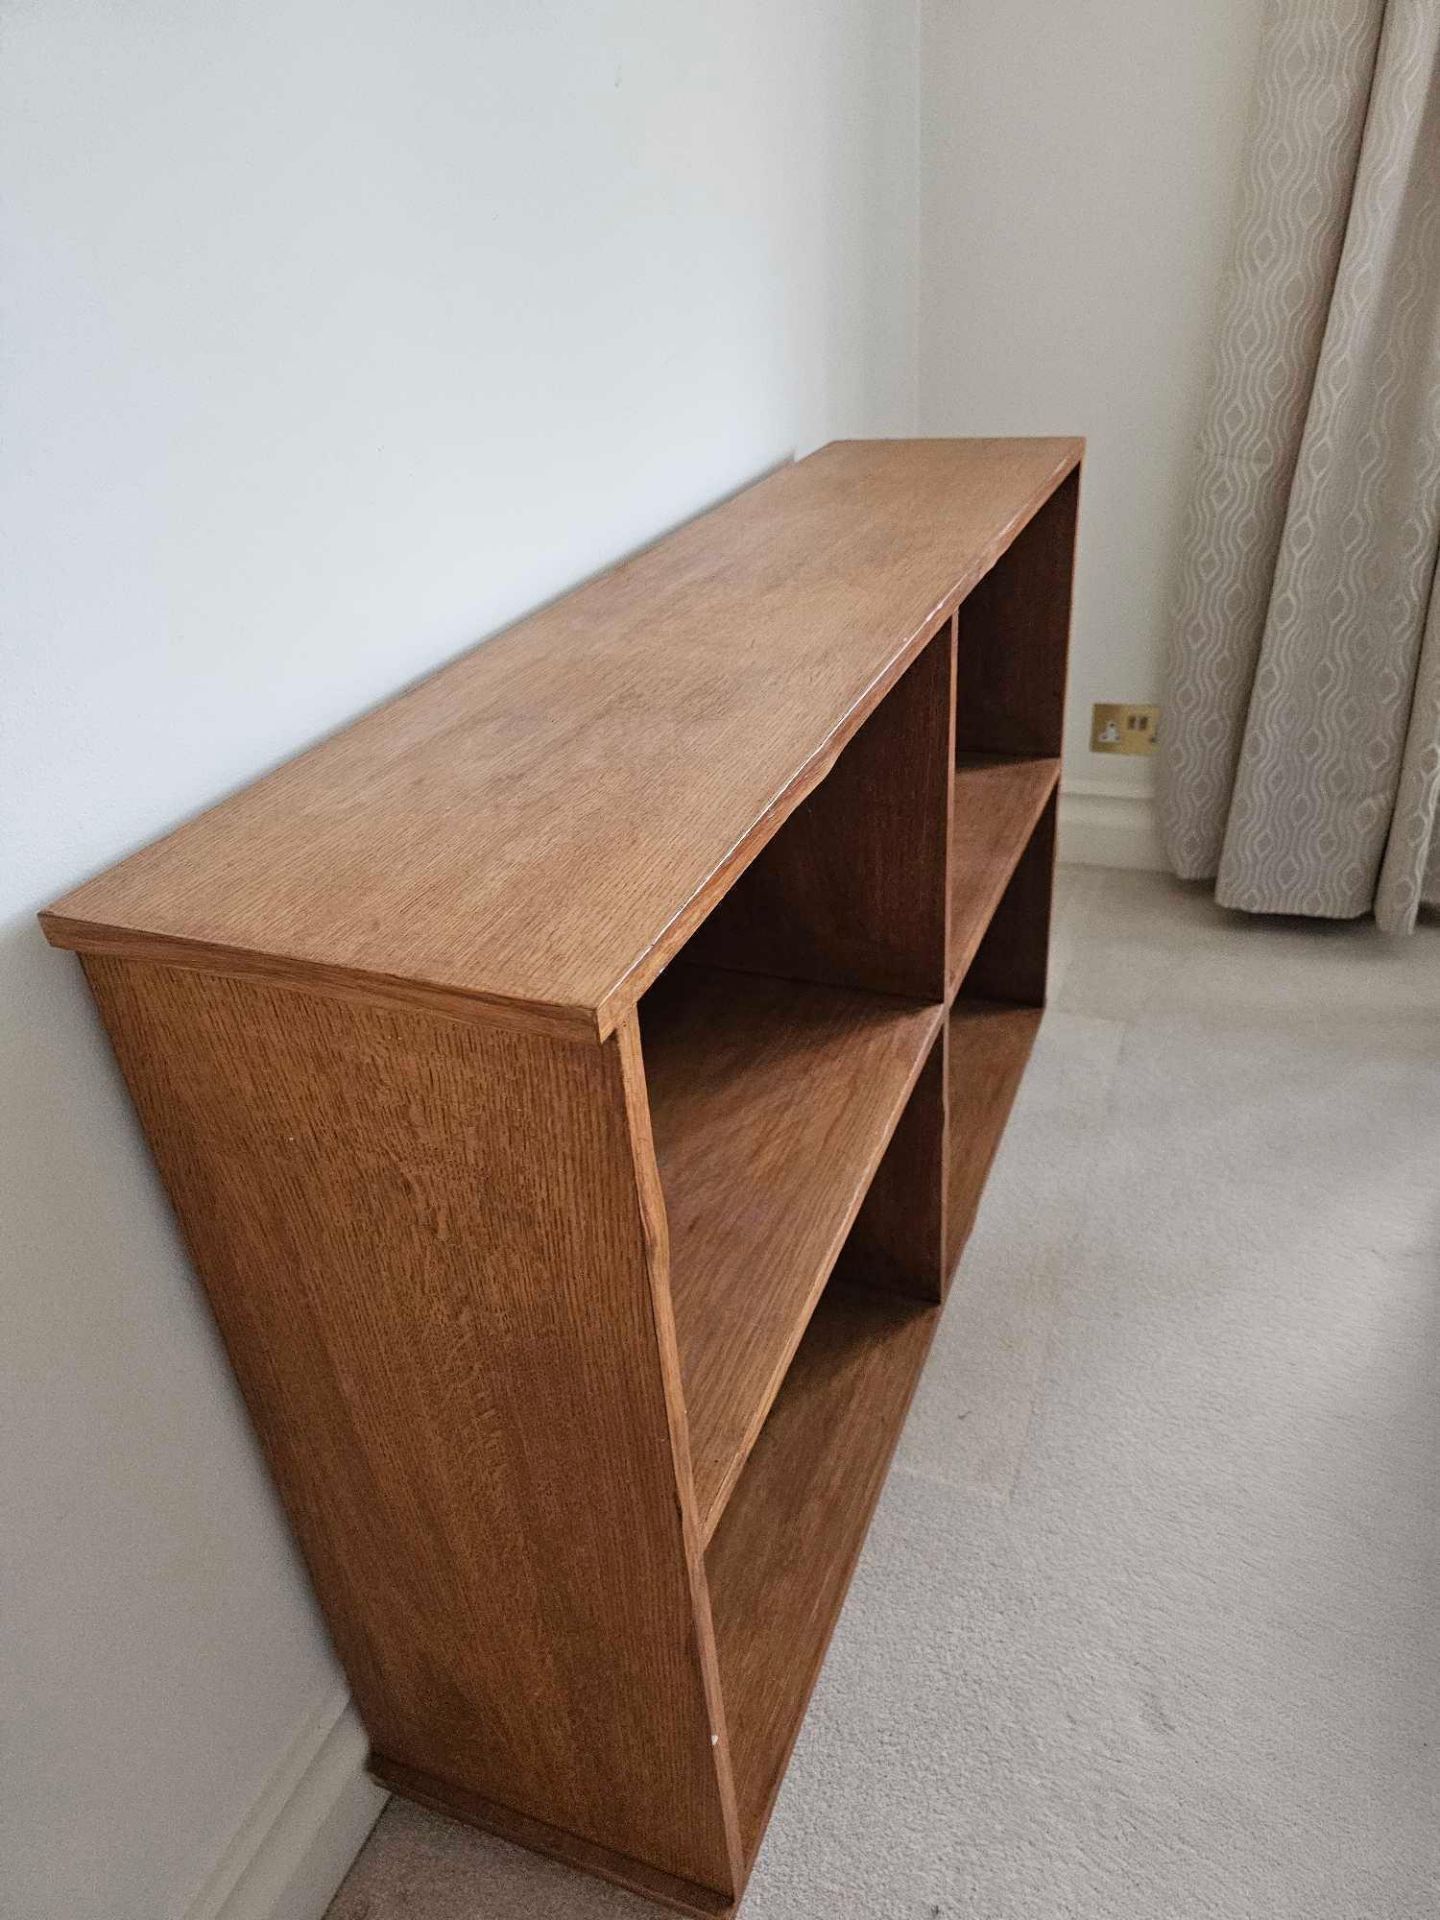 A Wooden Open Storage Unit 4 Shelves 122 X 30 X 80cm - Image 3 of 4